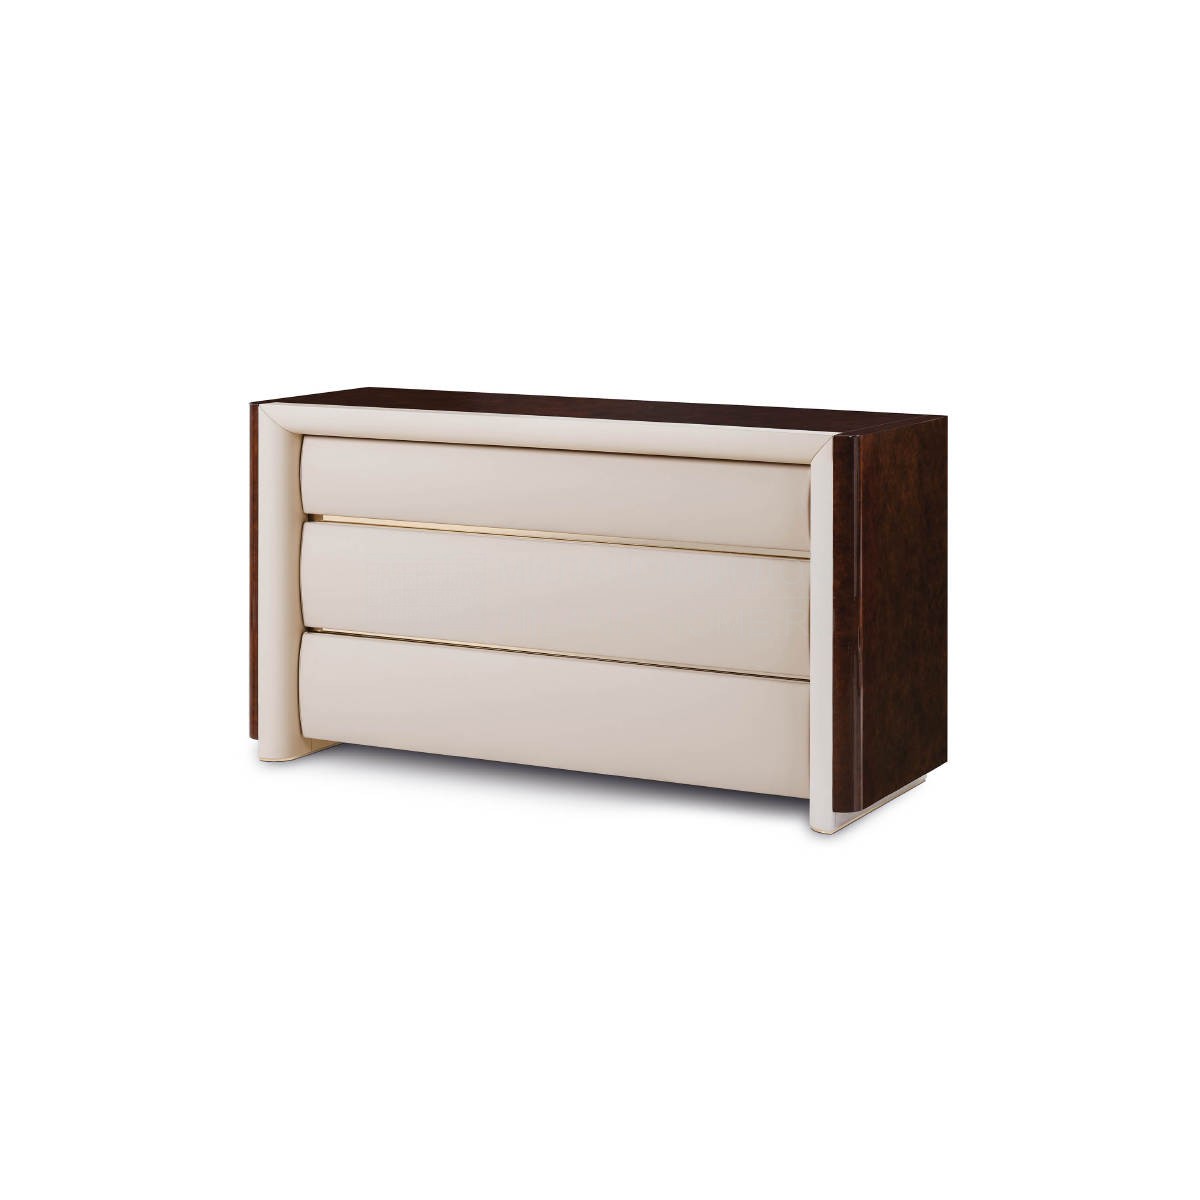 Комод Madison chest of drawers из Италии фабрики TURRI